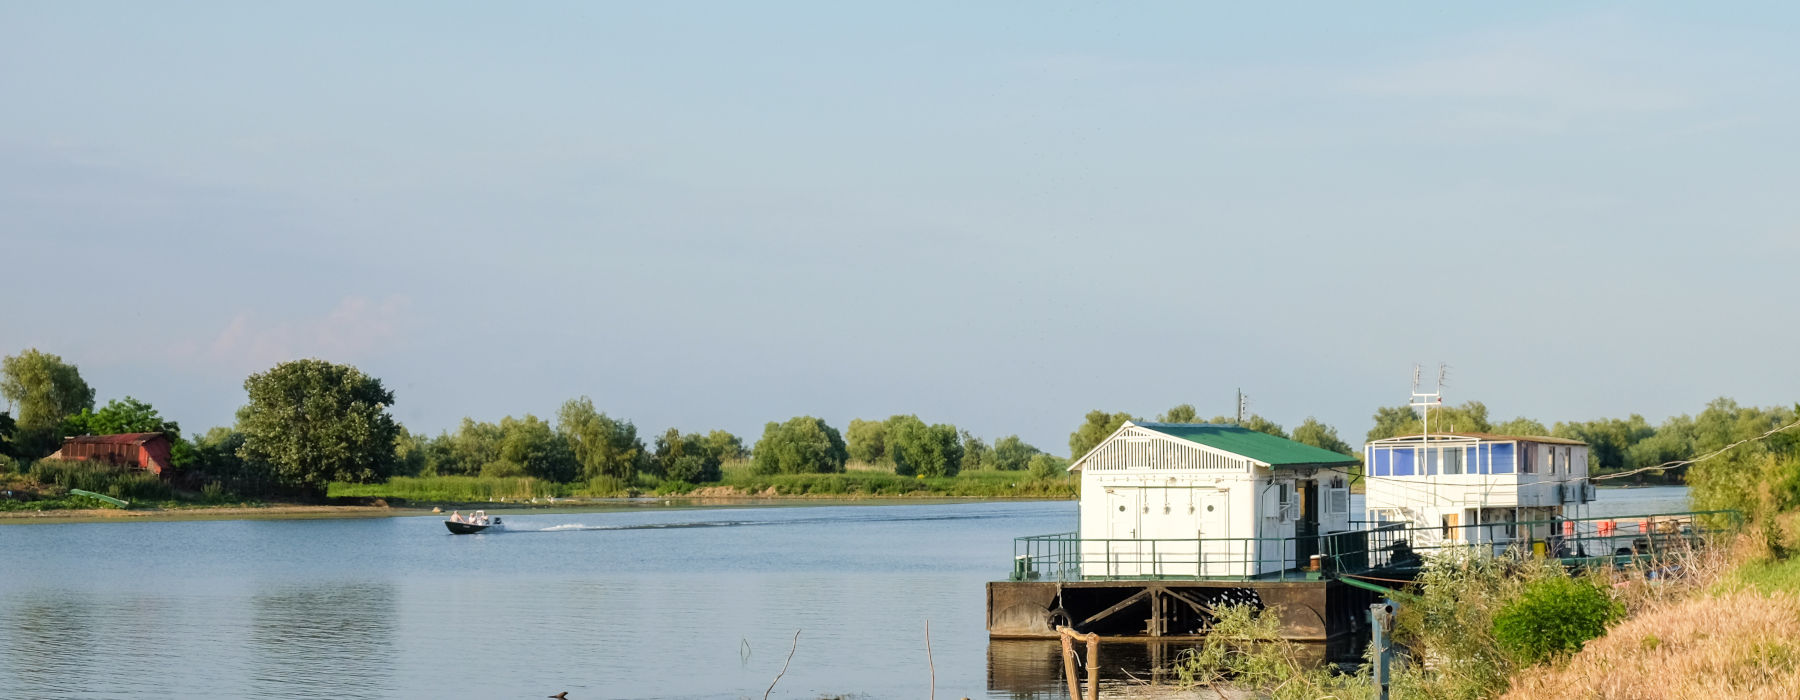 Danube Delta<br class="hidden-md hidden-lg" /> Holidays